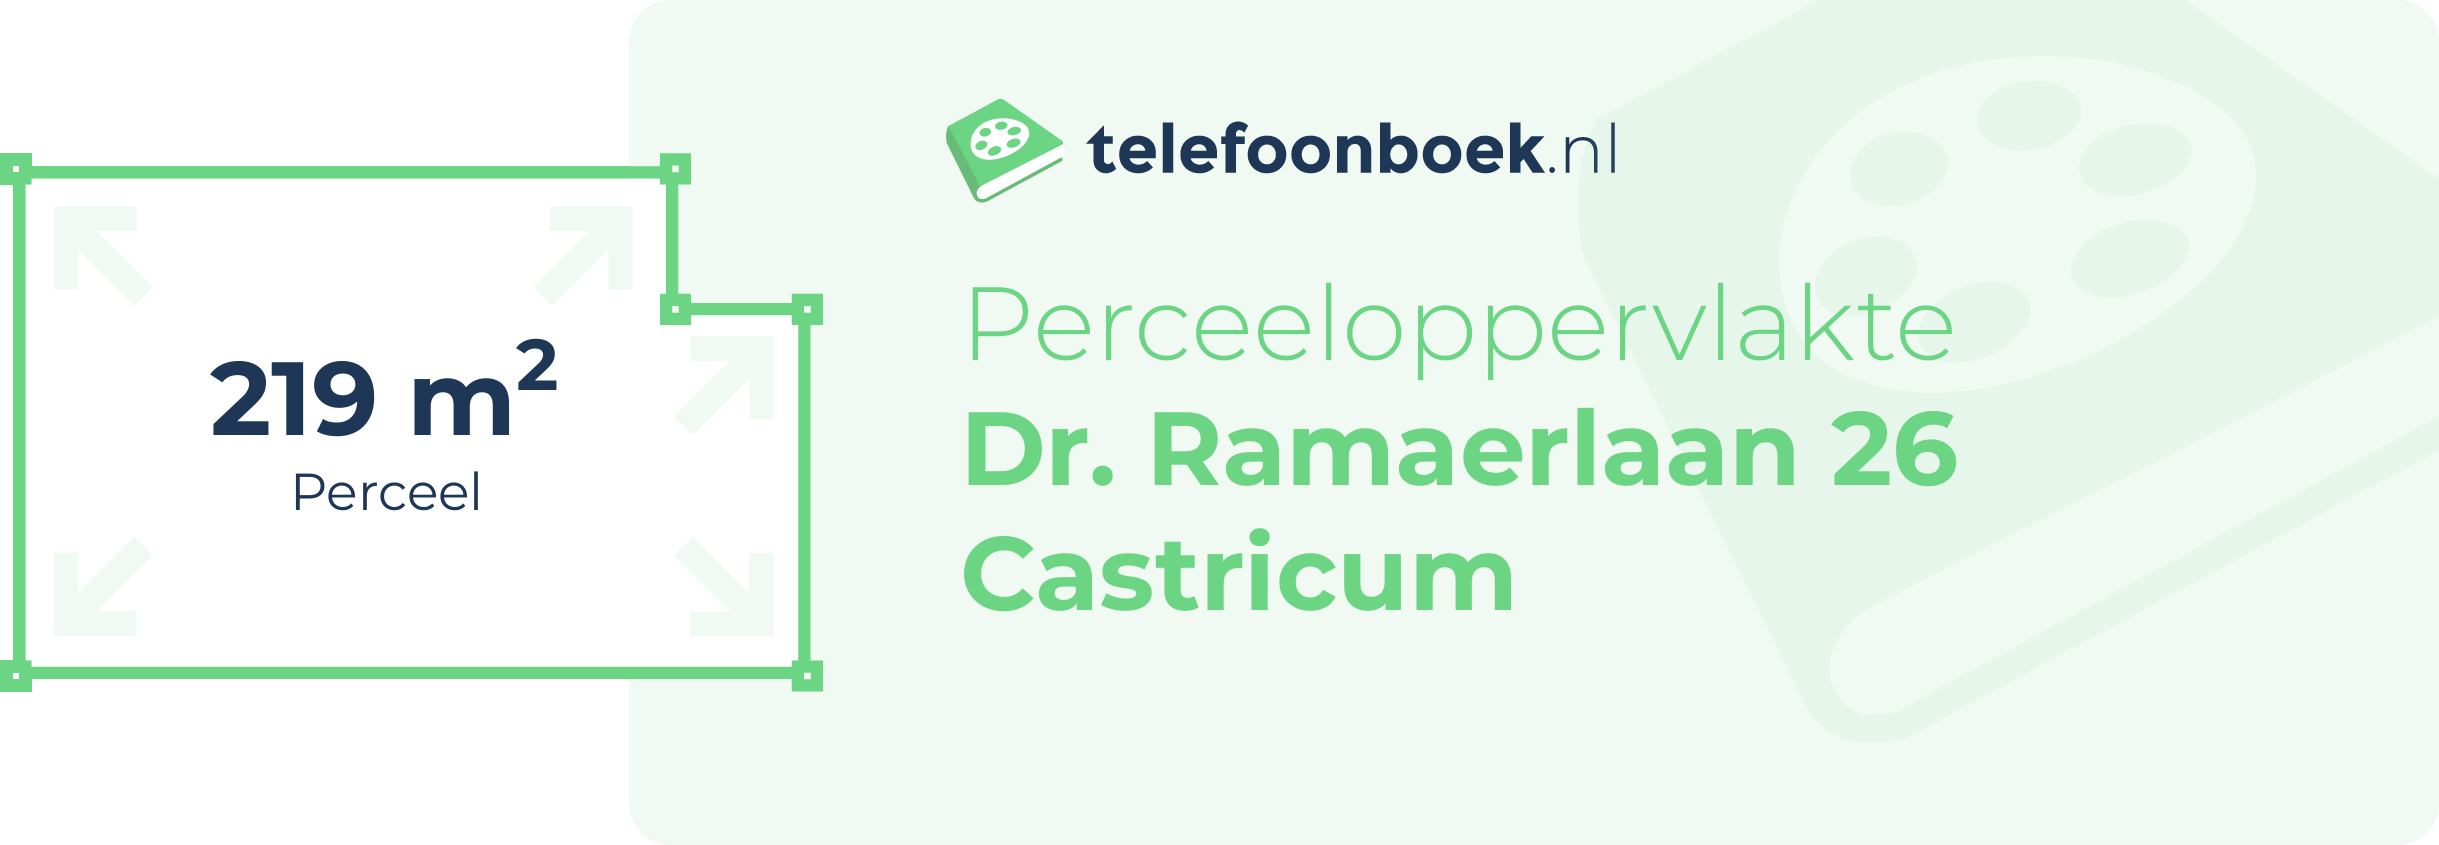 Perceeloppervlakte Dr. Ramaerlaan 26 Castricum